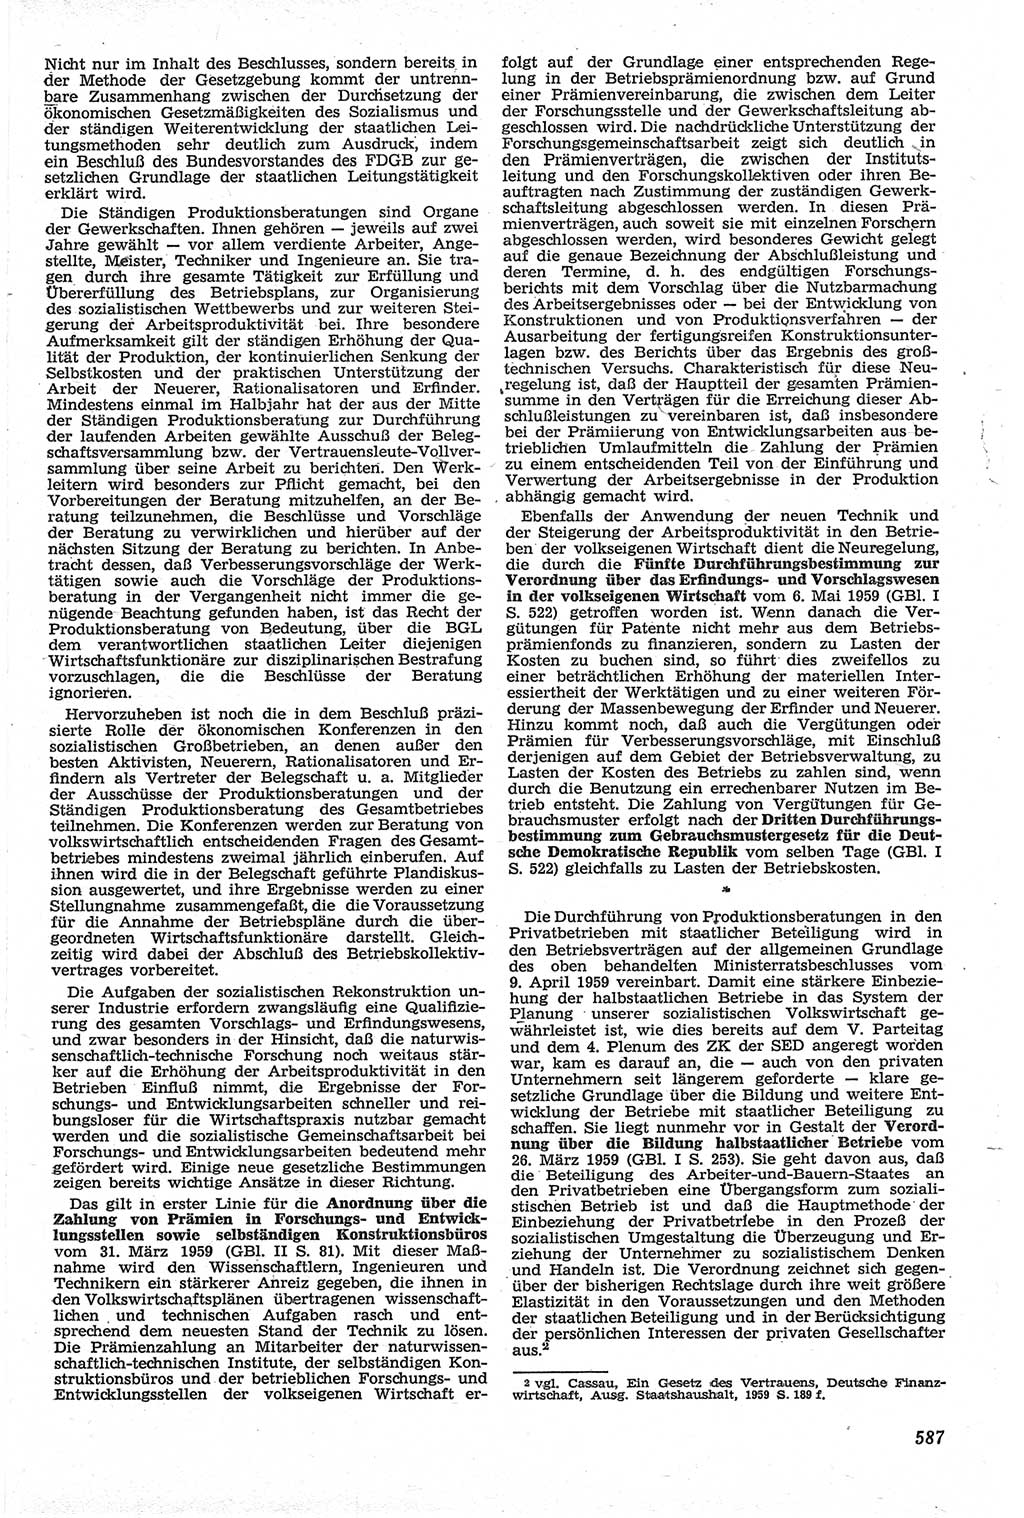 Neue Justiz (NJ), Zeitschrift für Recht und Rechtswissenschaft [Deutsche Demokratische Republik (DDR)], 13. Jahrgang 1959, Seite 587 (NJ DDR 1959, S. 587)